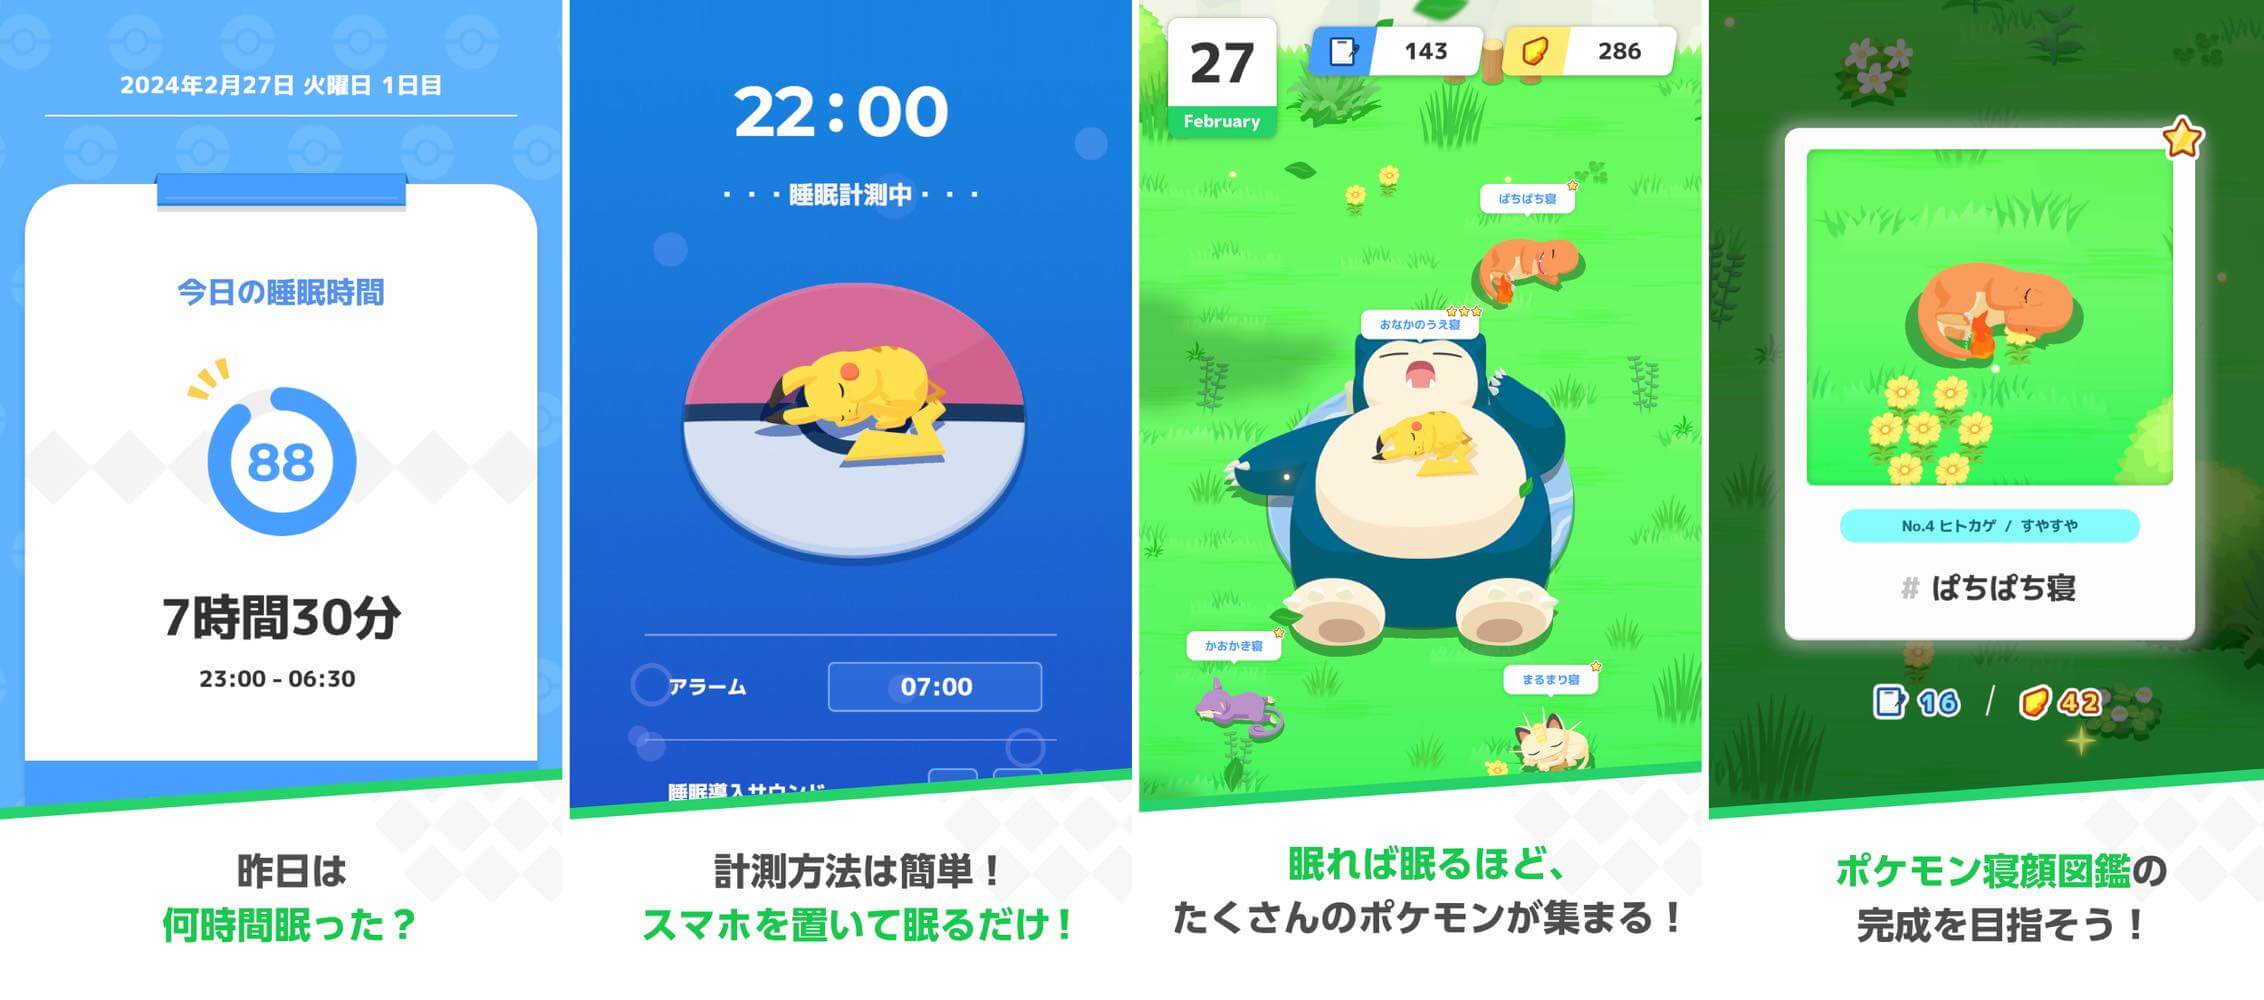 睡眠でポケモンの寝顔を集めるスマホアプリ｢Pokémon Sleep｣配信開始